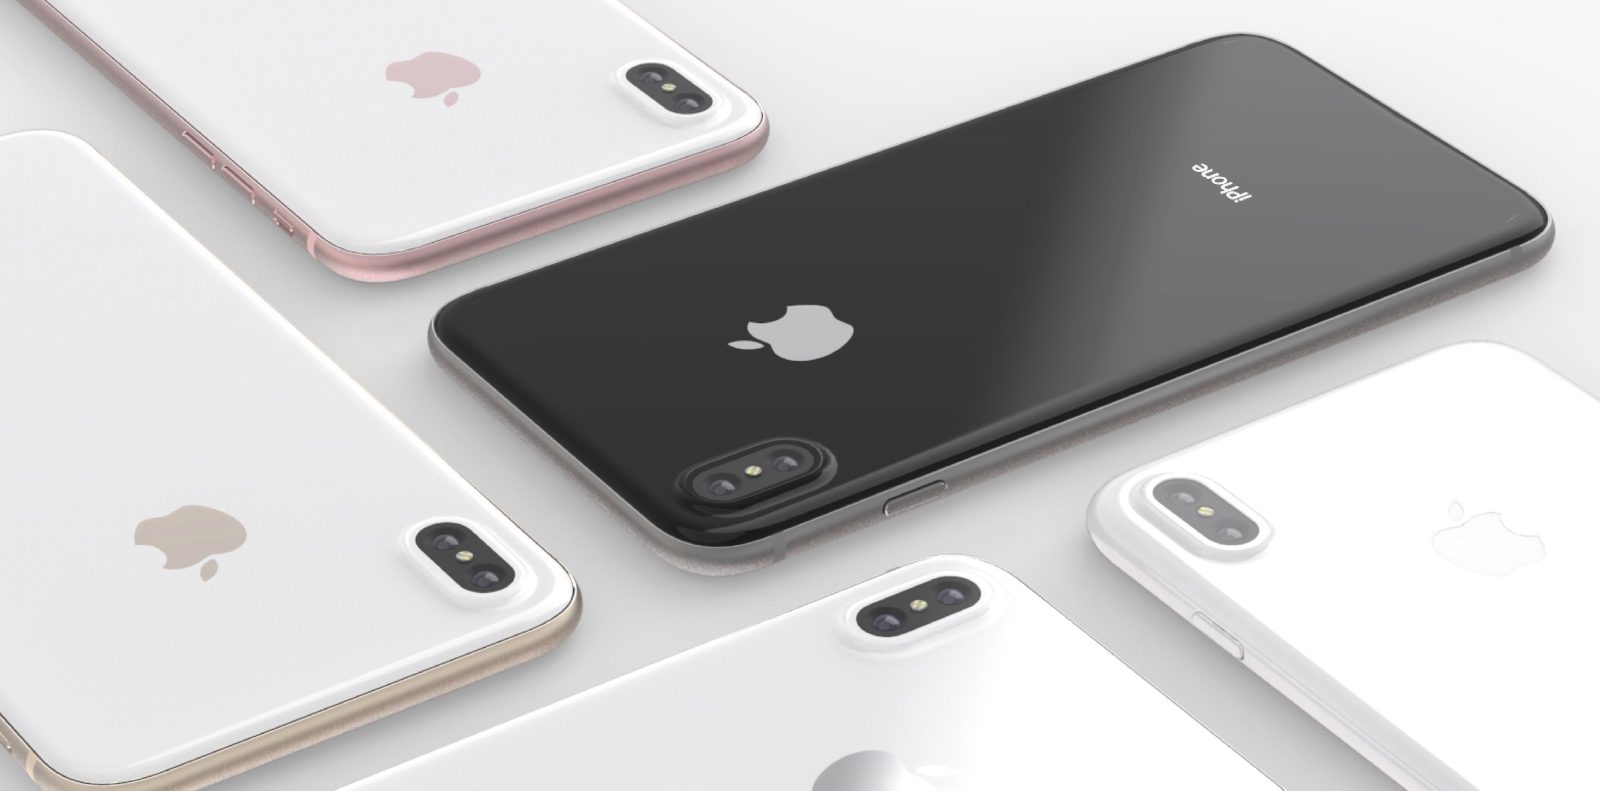 Giá bán iPhone 8 sẽ lên đến hơn 30 triệu đồng cho phiên bản 512GB